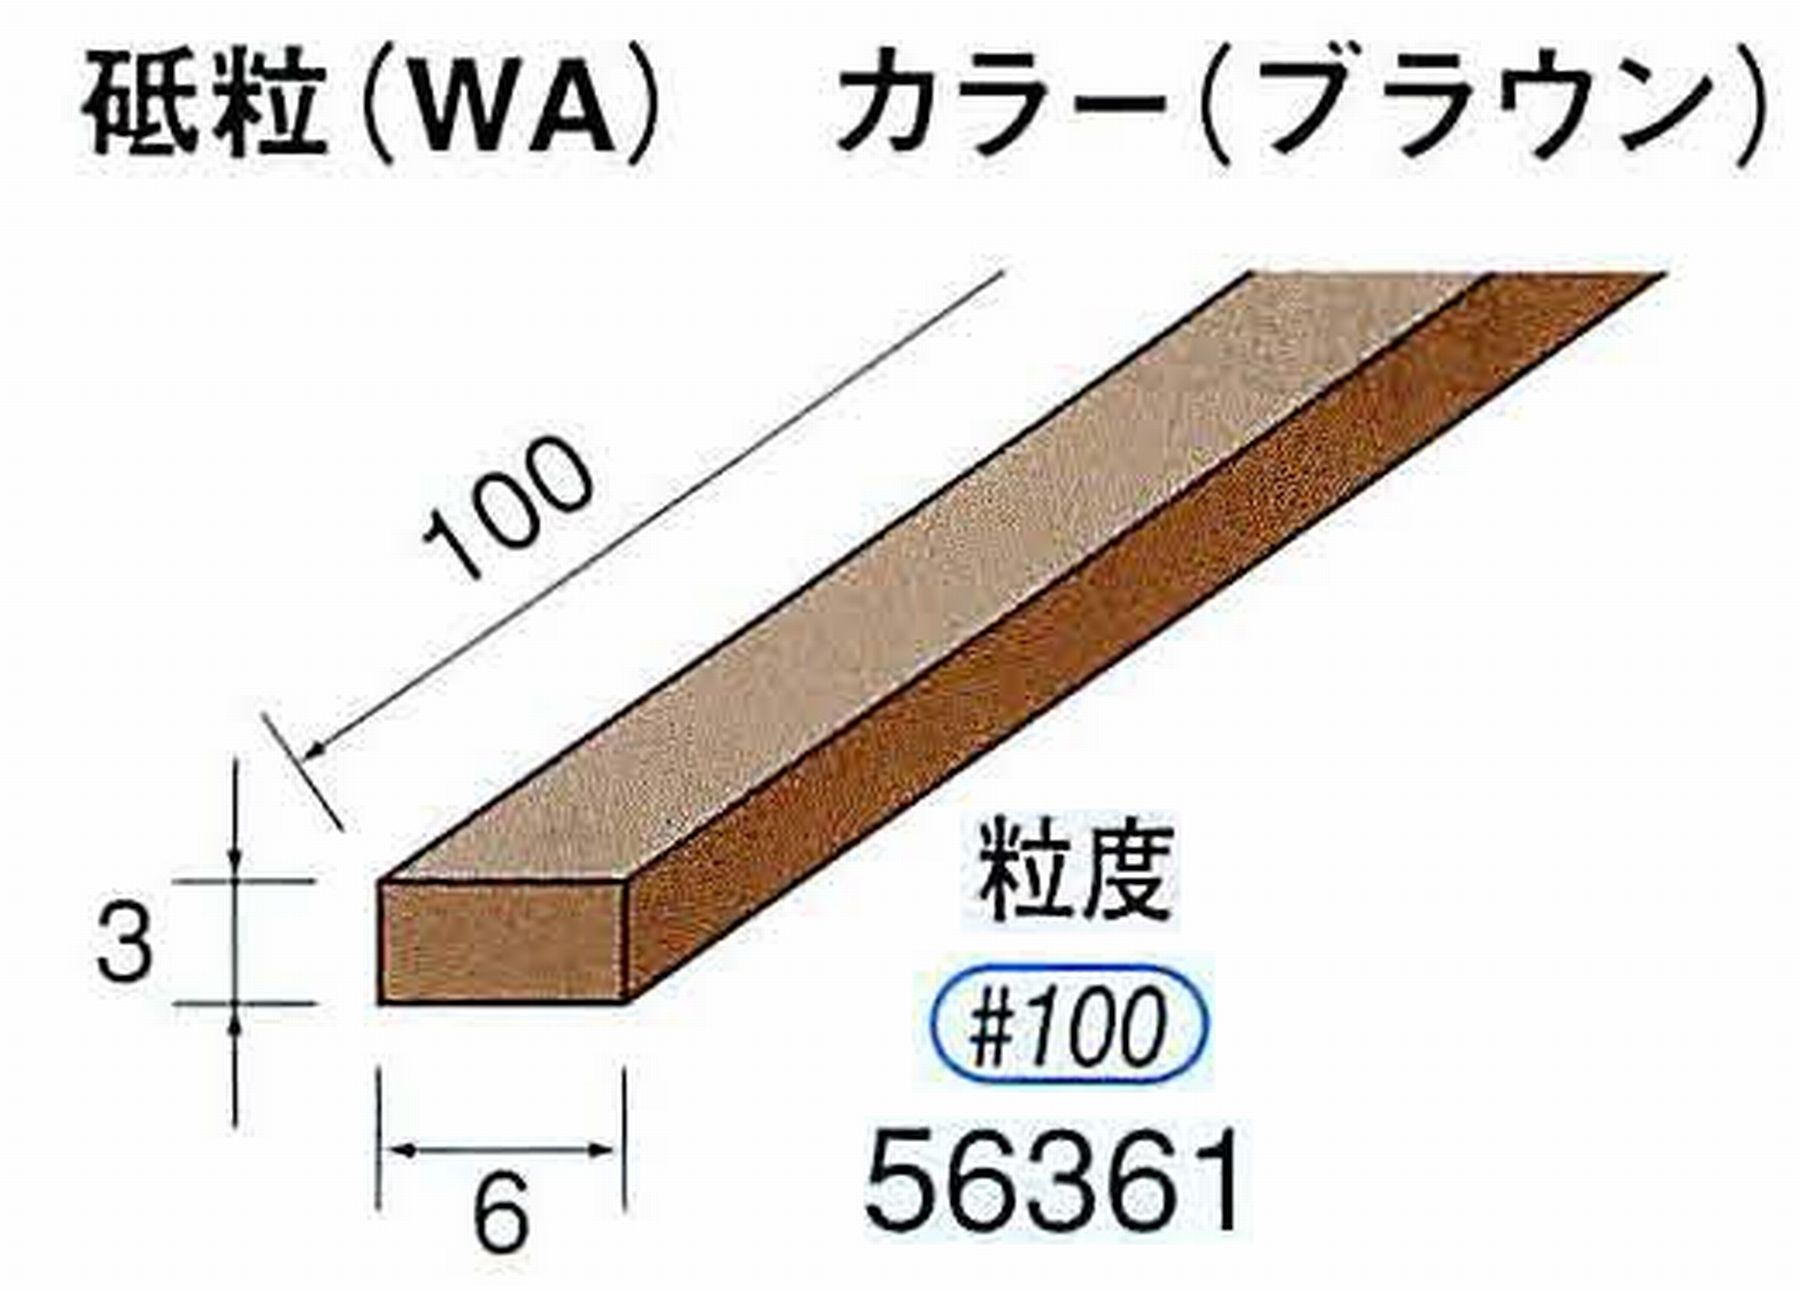 ナカニシ/NAKANISHI スティック砥石 ブラウン・フィニッシュシリーズ 砥粒(WA) 56361